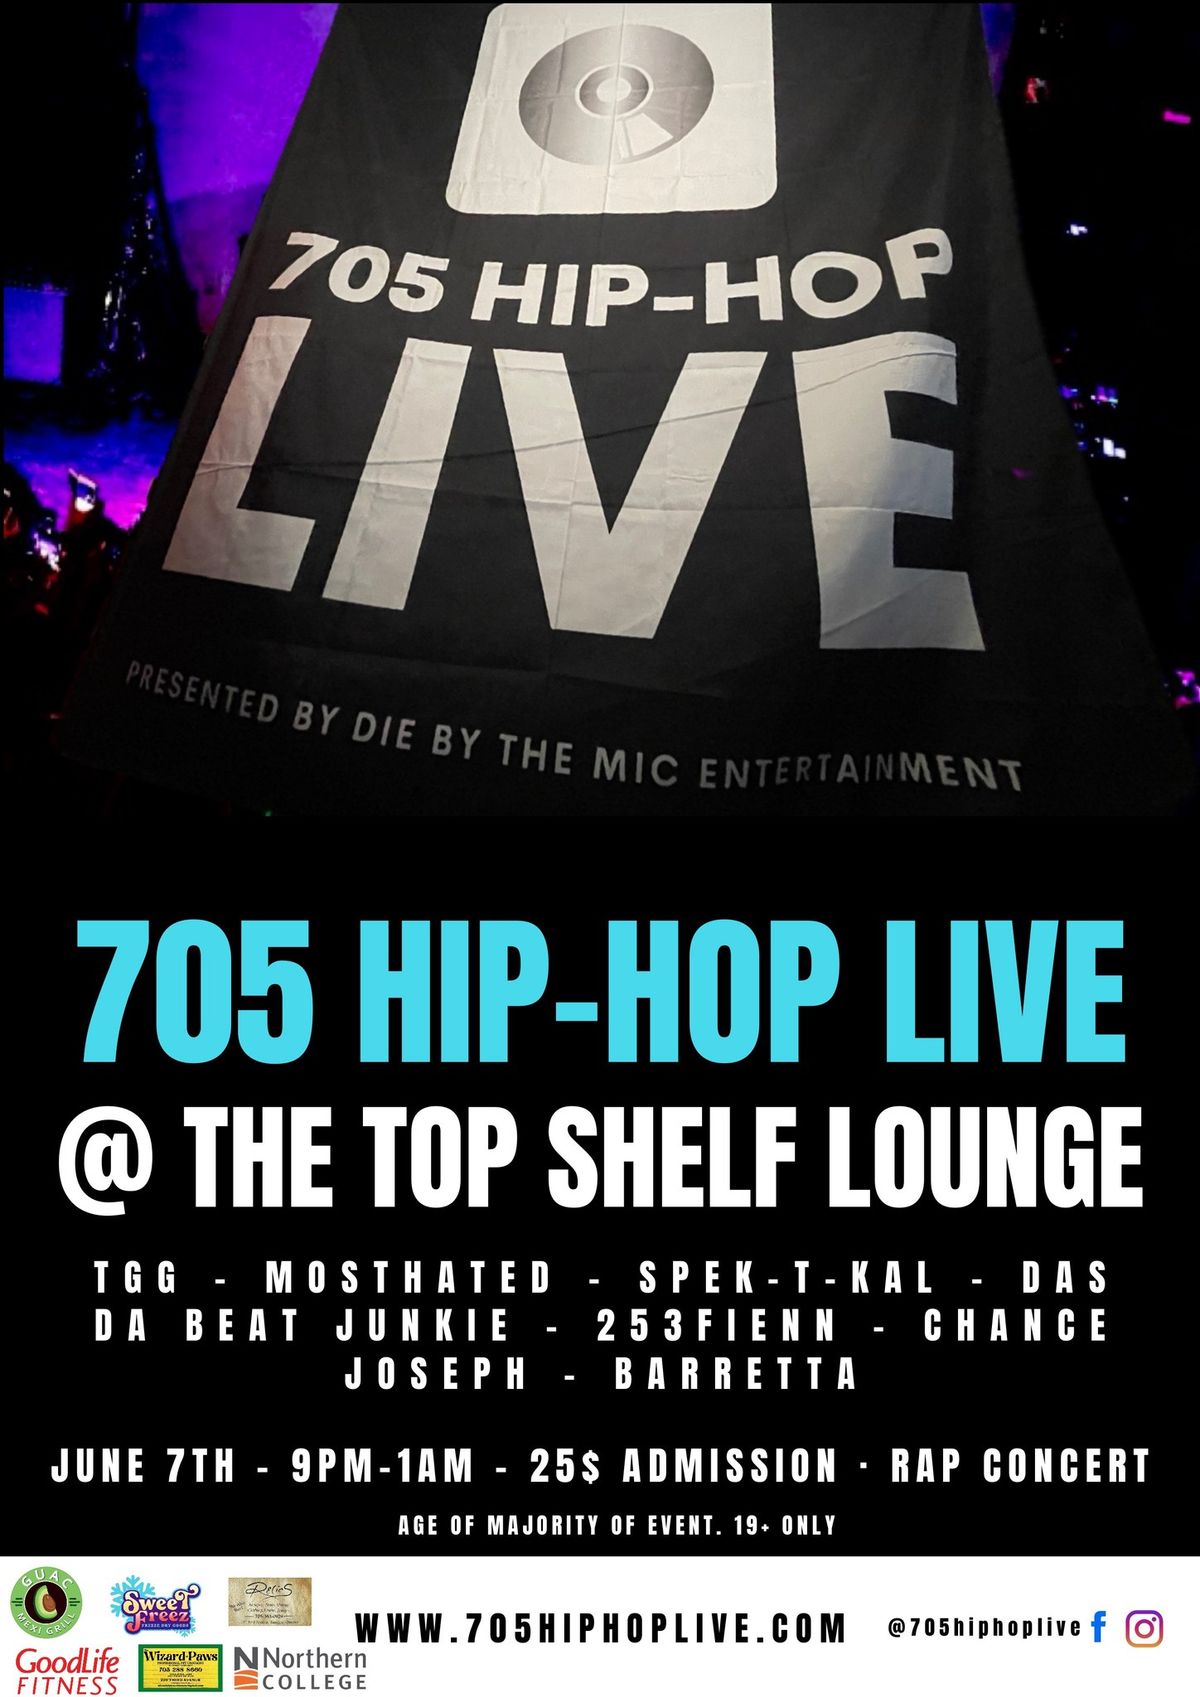 705 Hip-Hop Live @ the Top Shelf Lounge